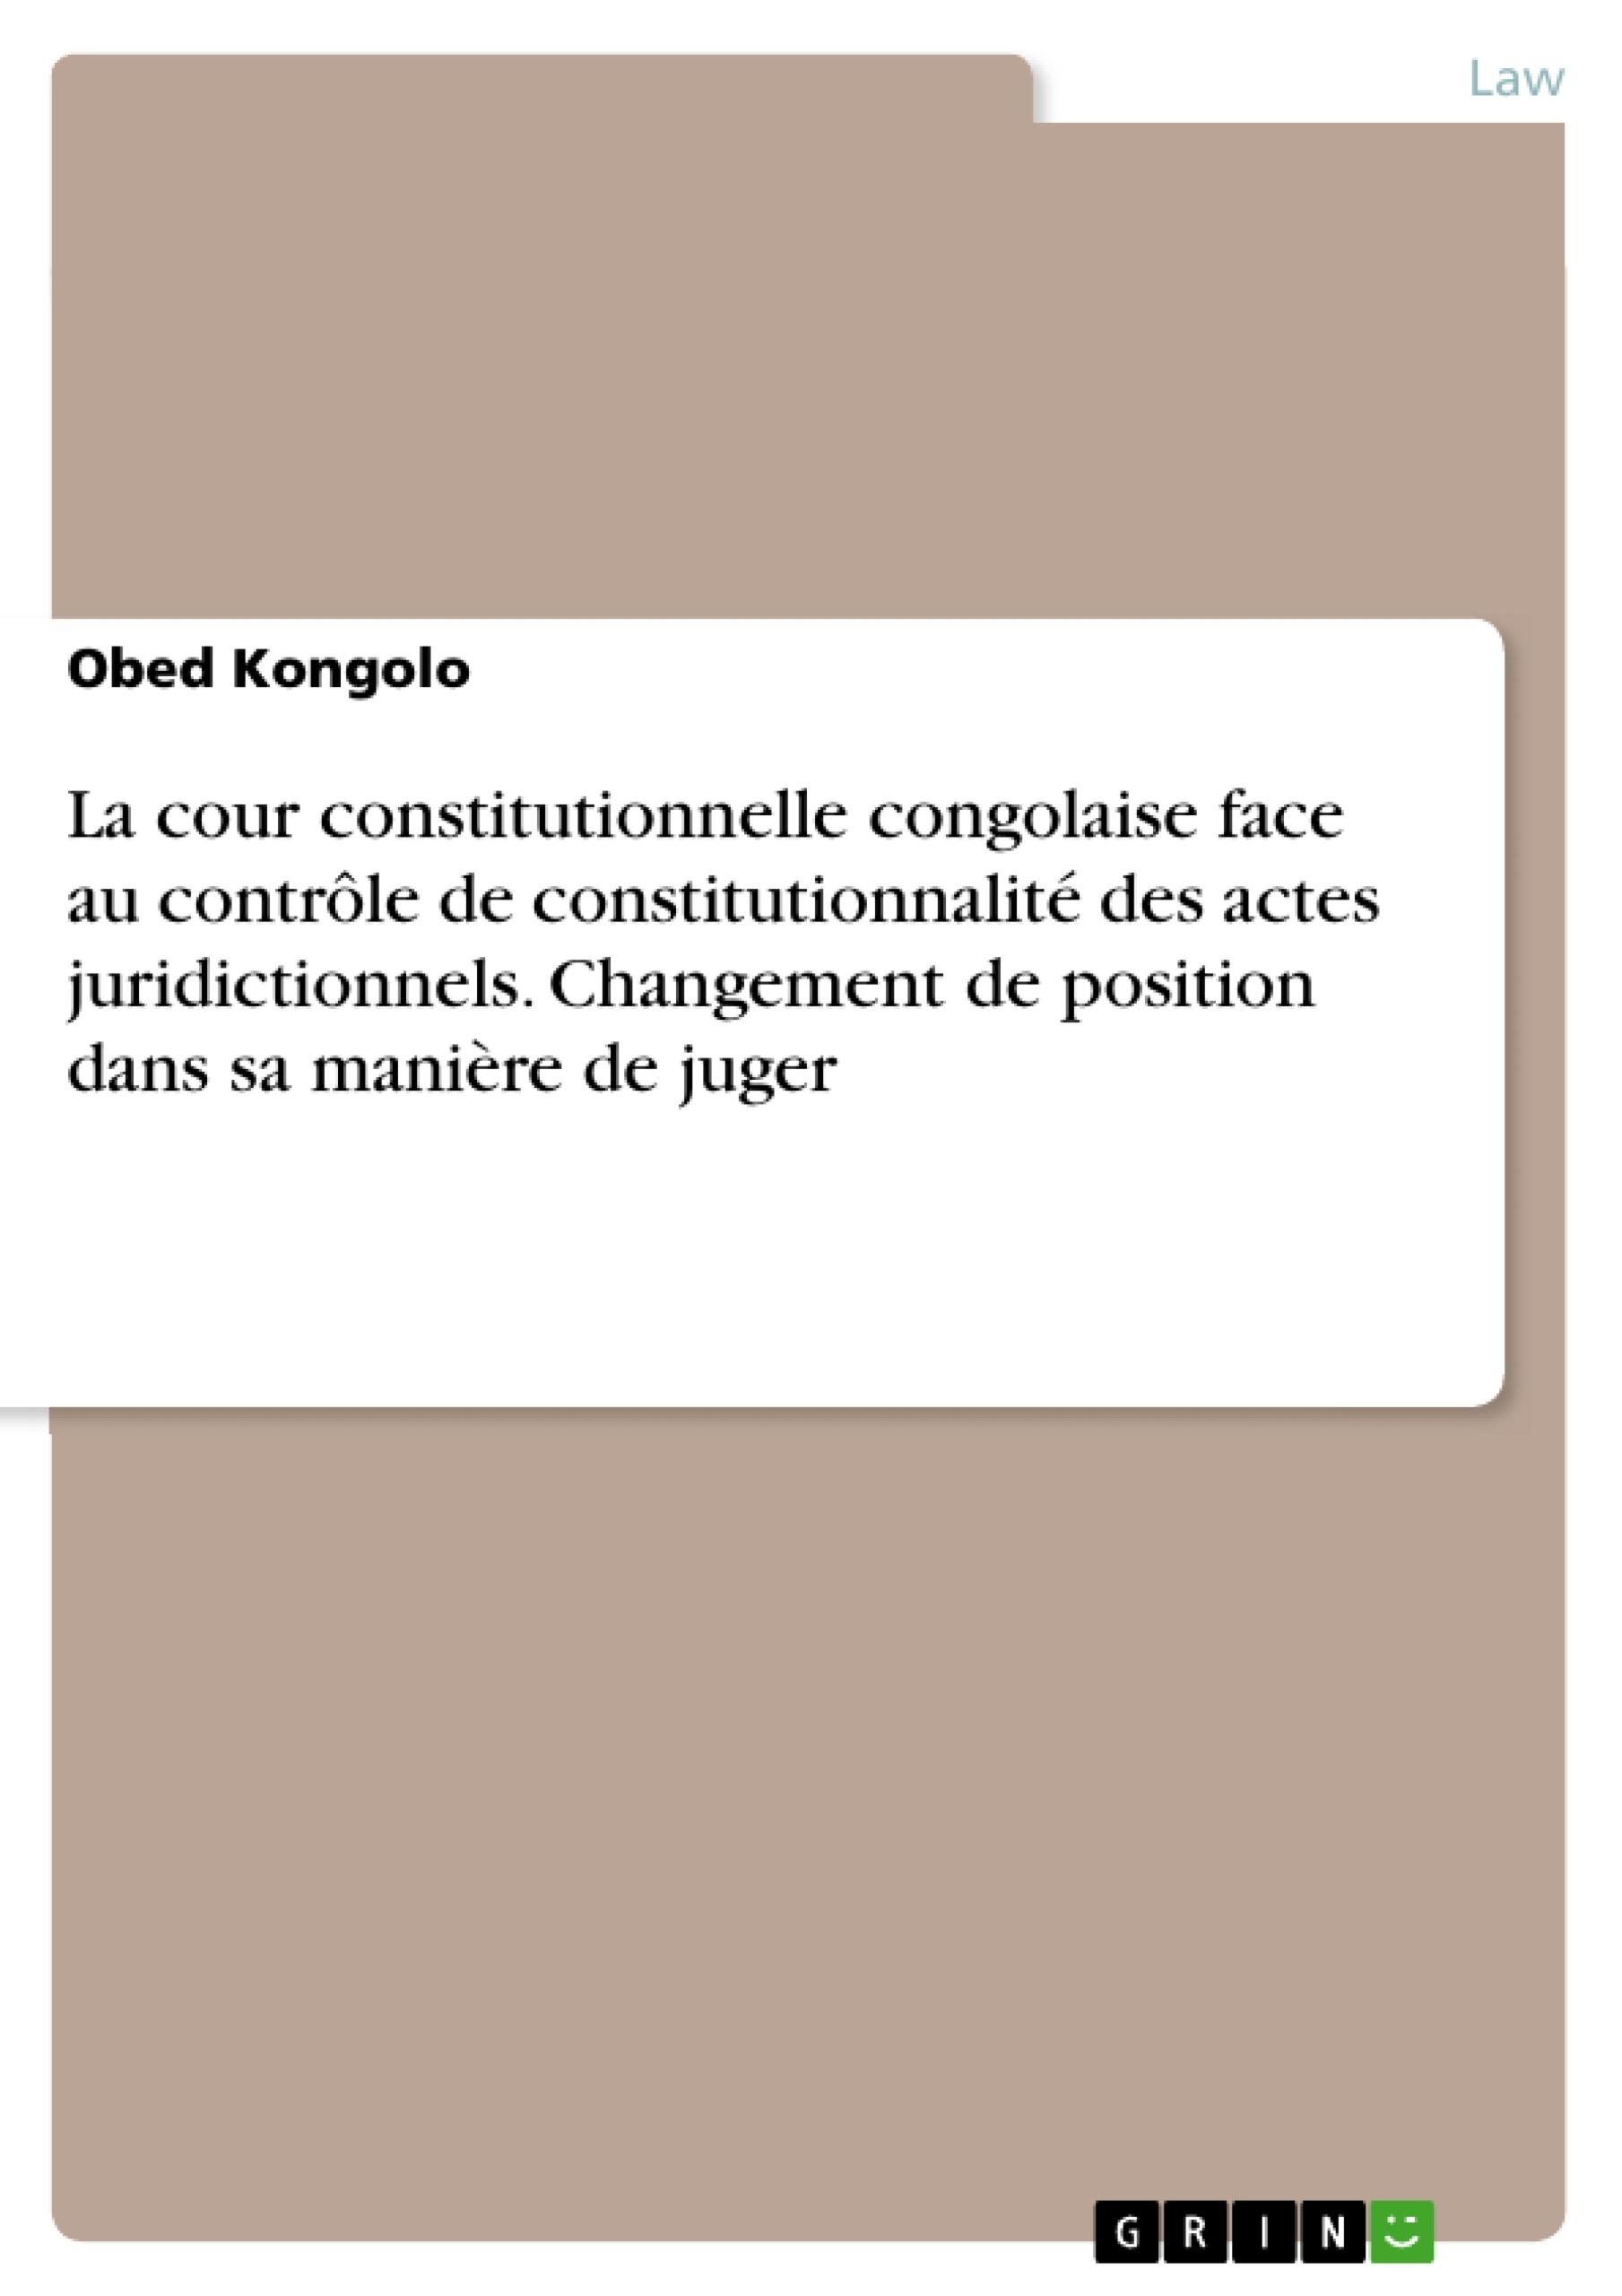 Título: La cour constitutionnelle congolaise face au contrôle de constitutionnalité des actes juridictionnels. Changement de position dans sa manière de juger